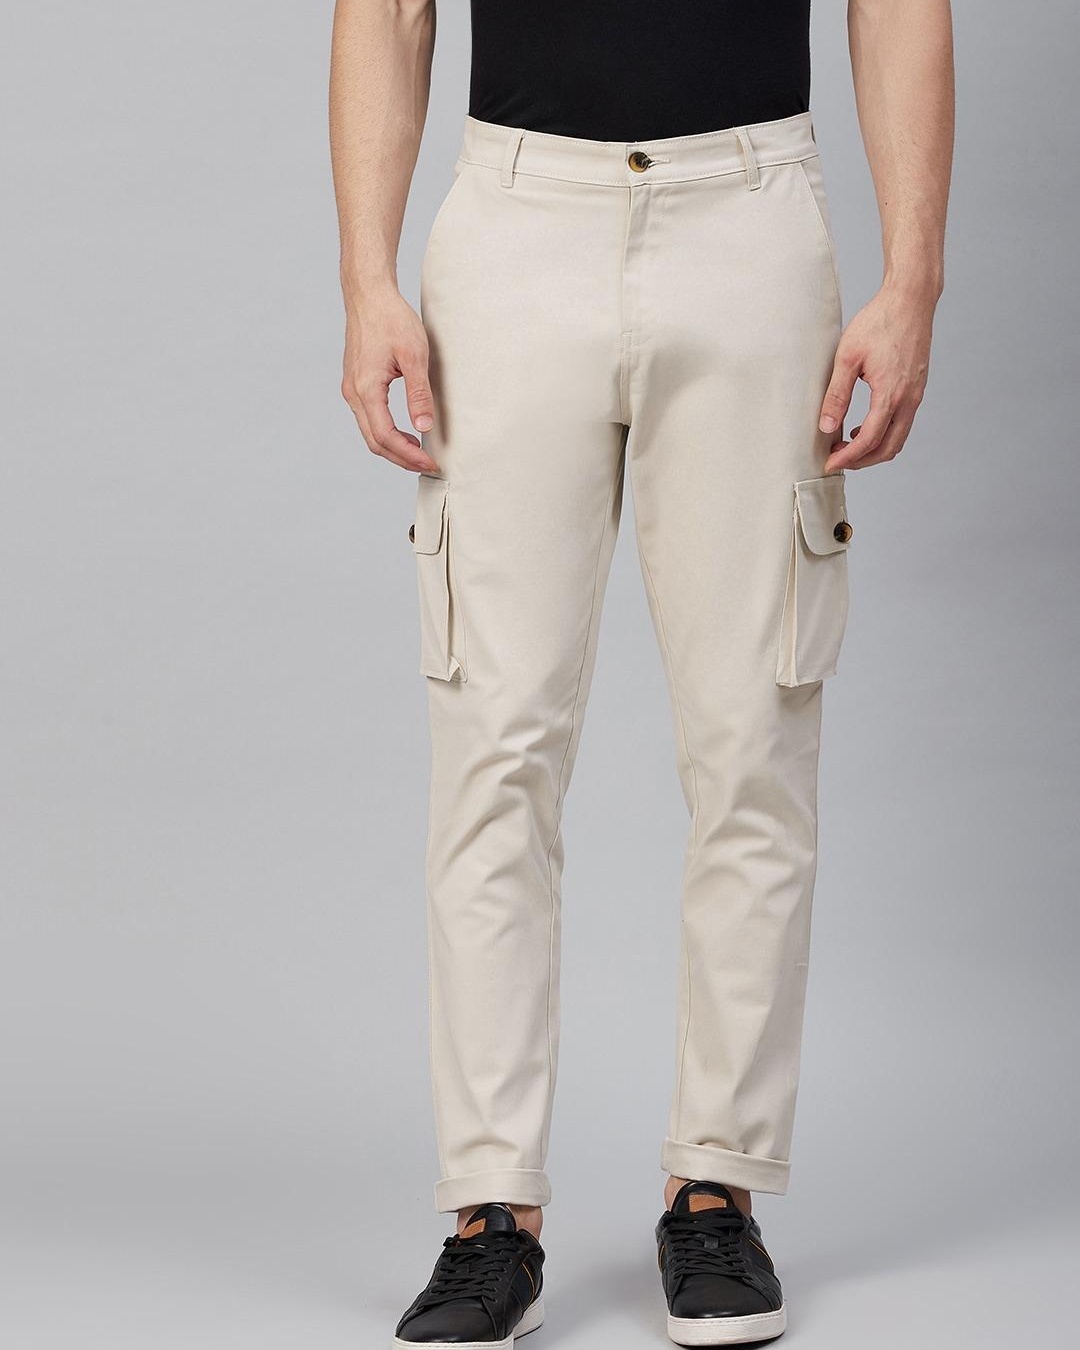 Buy Men's Beige Slim Fit Trousers for Men Beige Online at Bewakoof